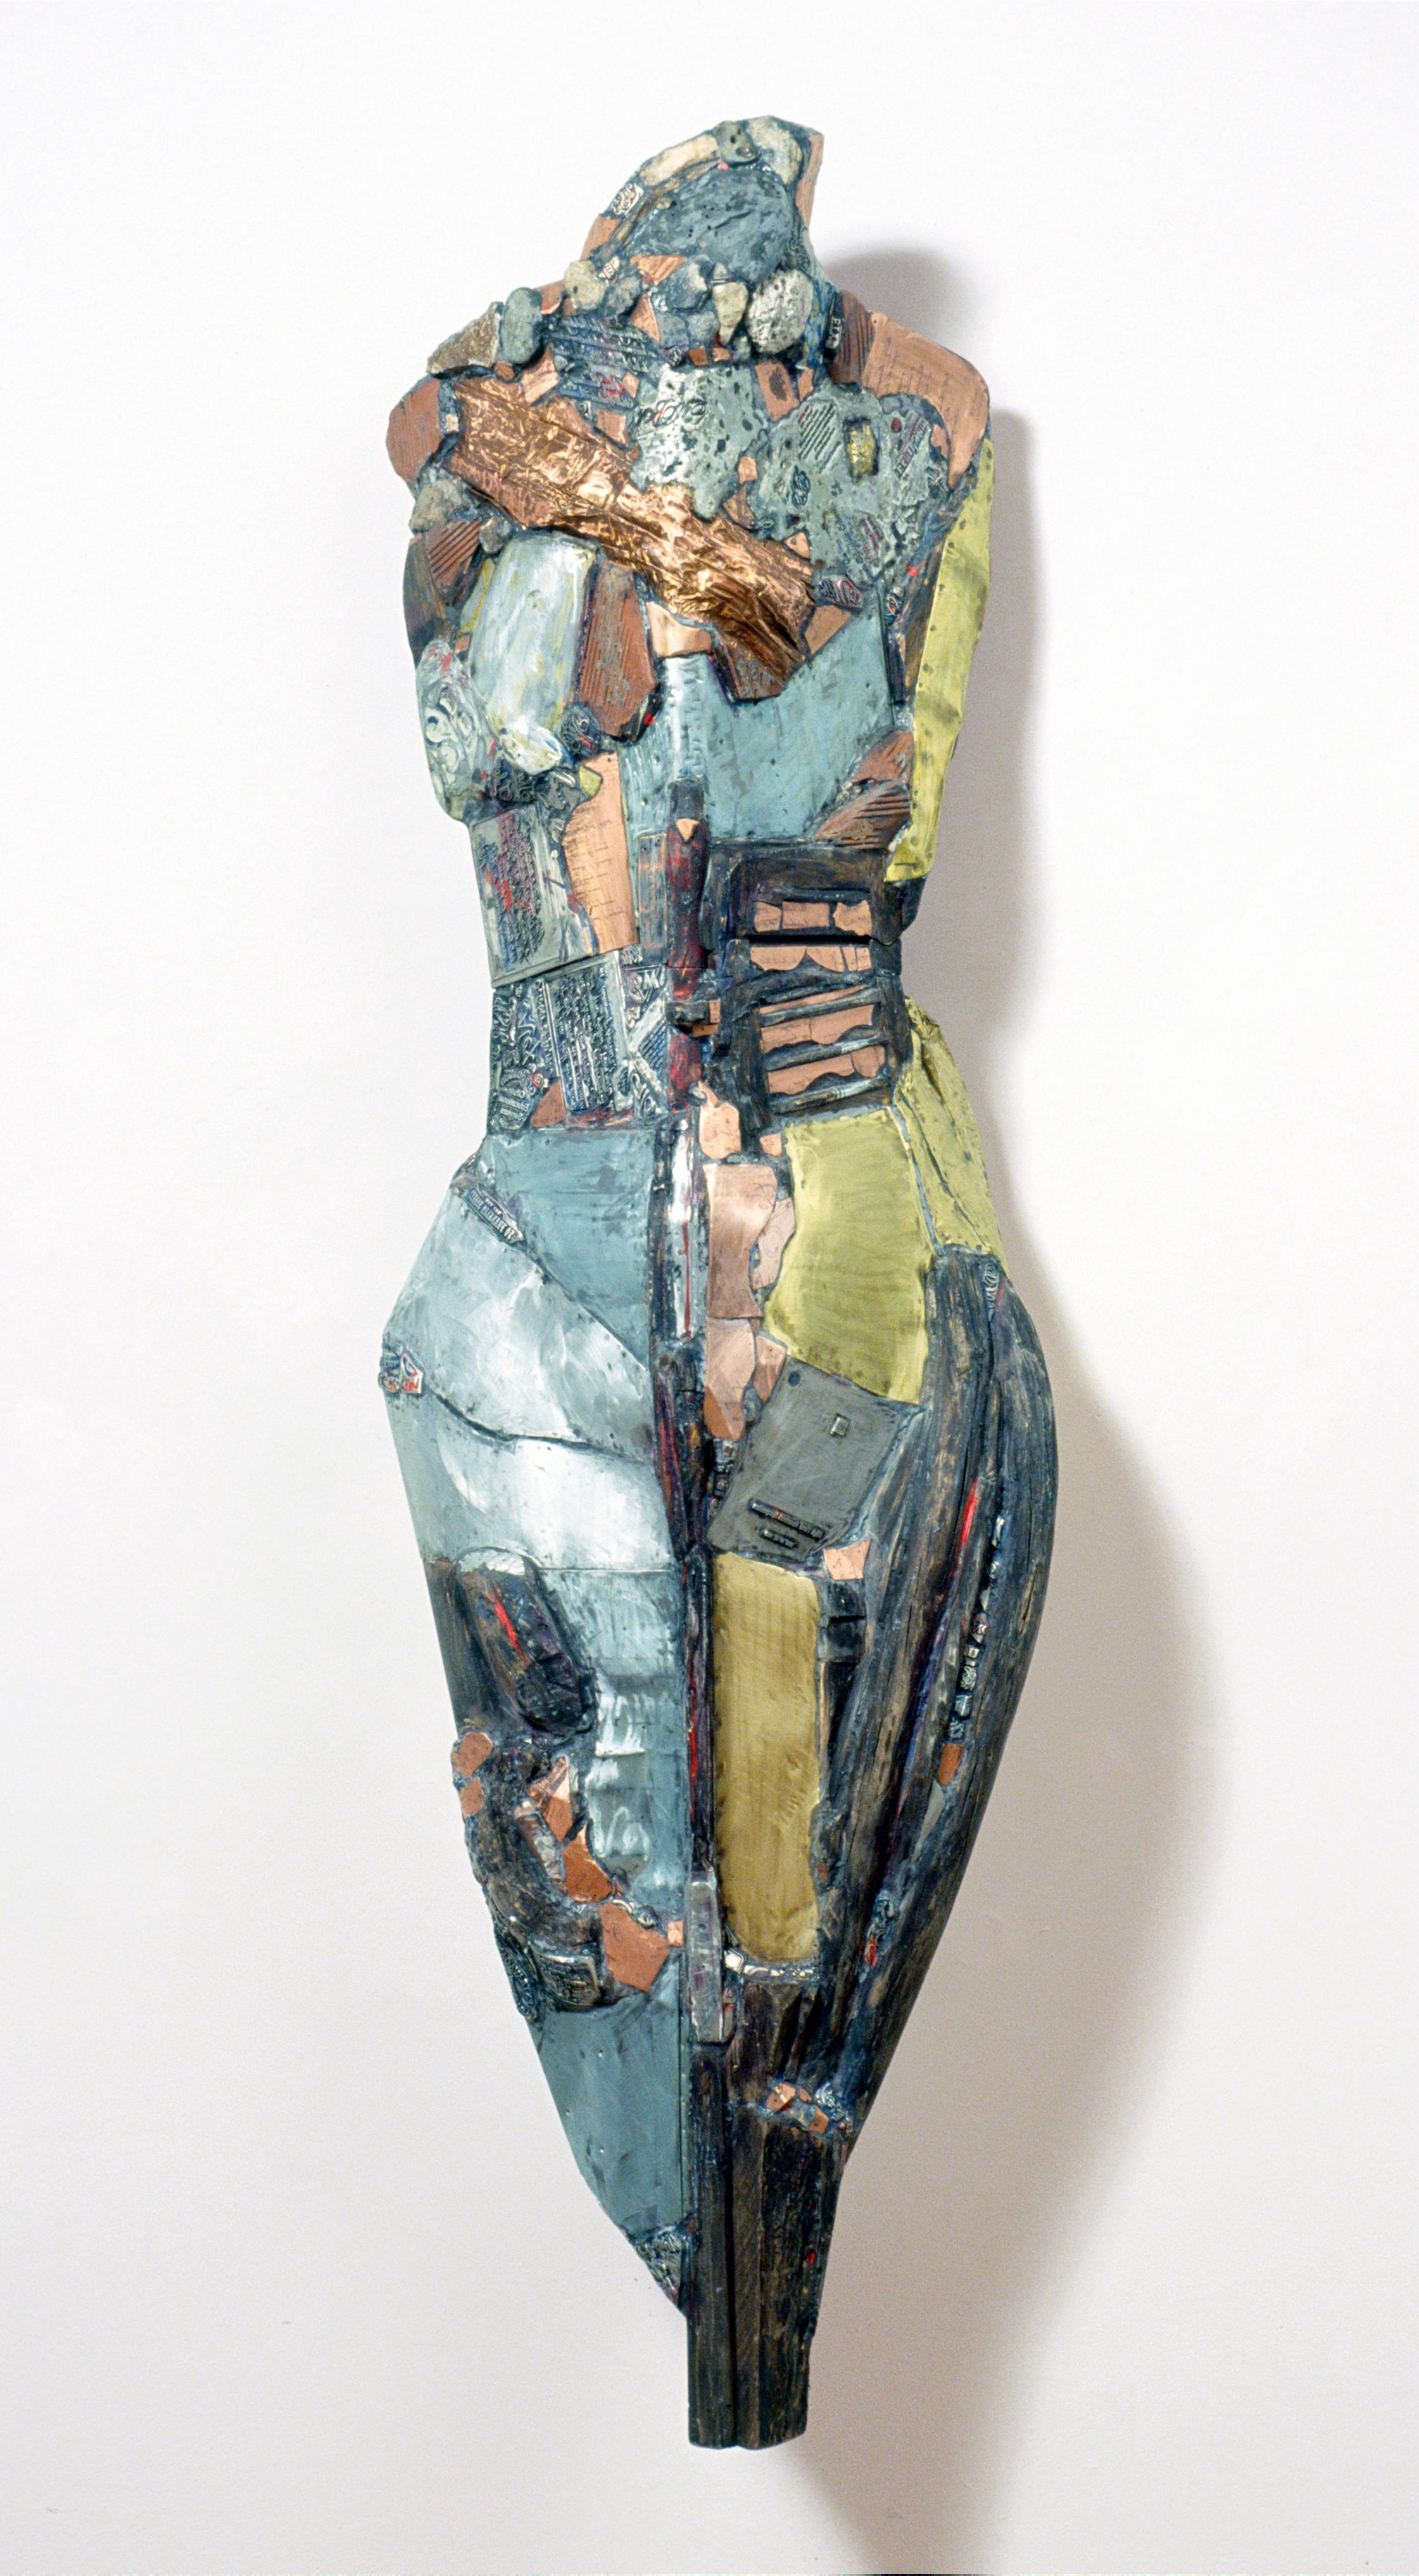 Linda Stein, Knight of Tomorrow 542 – Zeitgenössische Metallsteinholz-Skulptur